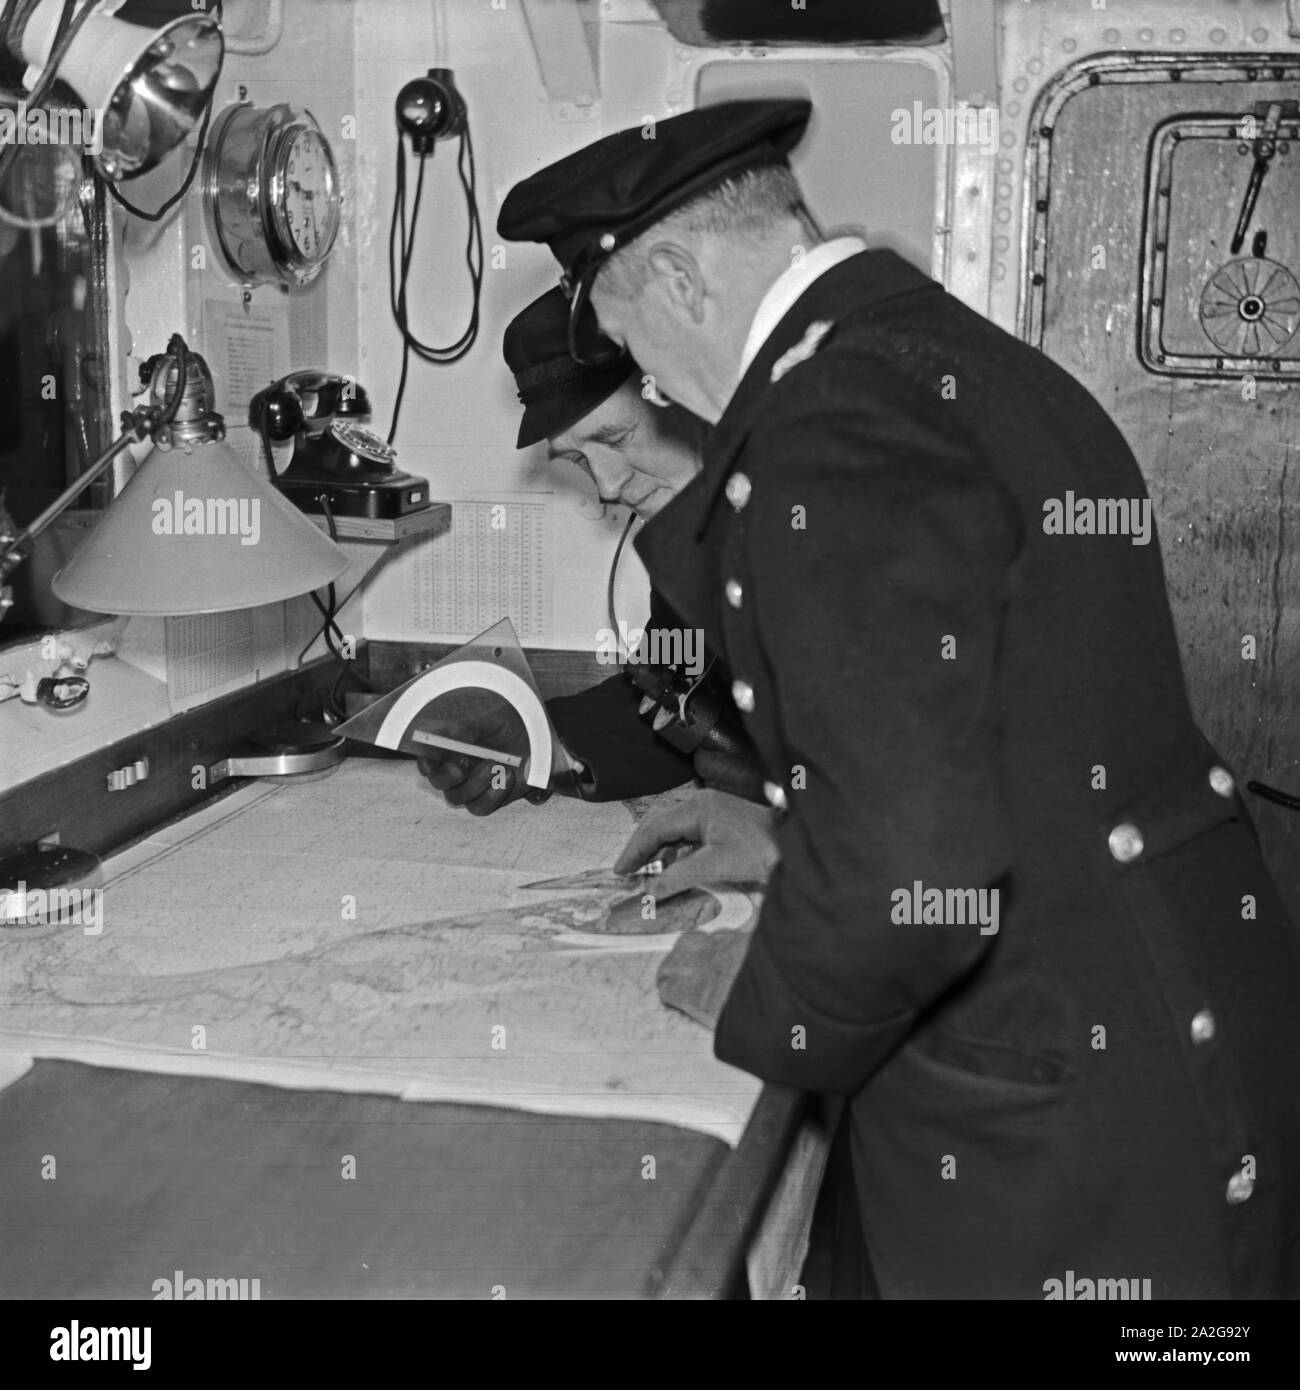 Offizier und Bootsmann bei der Navigation in einem Minensuchboot, Deutschland 1930er Jahre. Offizier und Petty Officer Navigieren einer Minesweeper, Deutschland 1930. Stockfoto